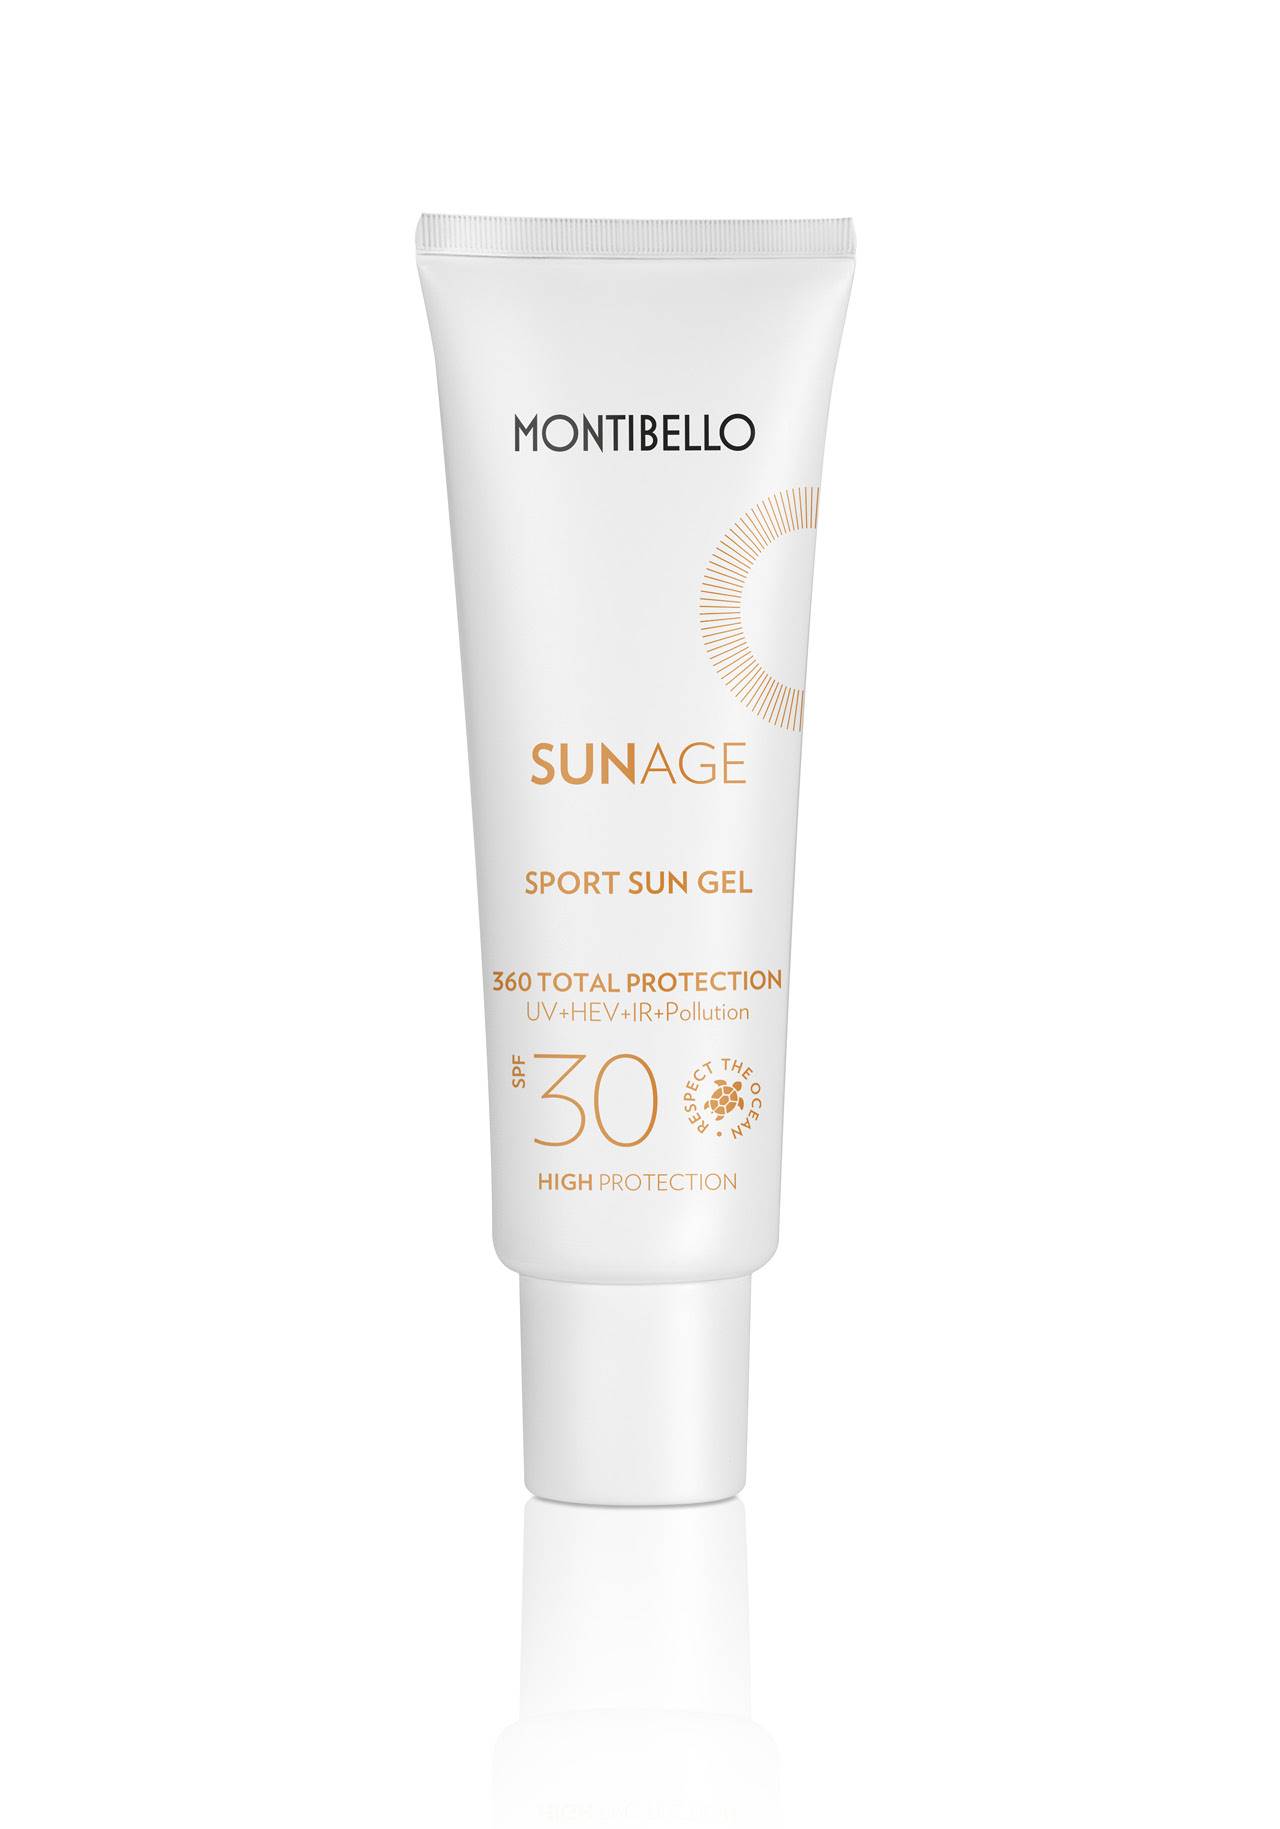 Mejores cremas solares dermatólogos Sunage Sport Sun Gel de Montibello.